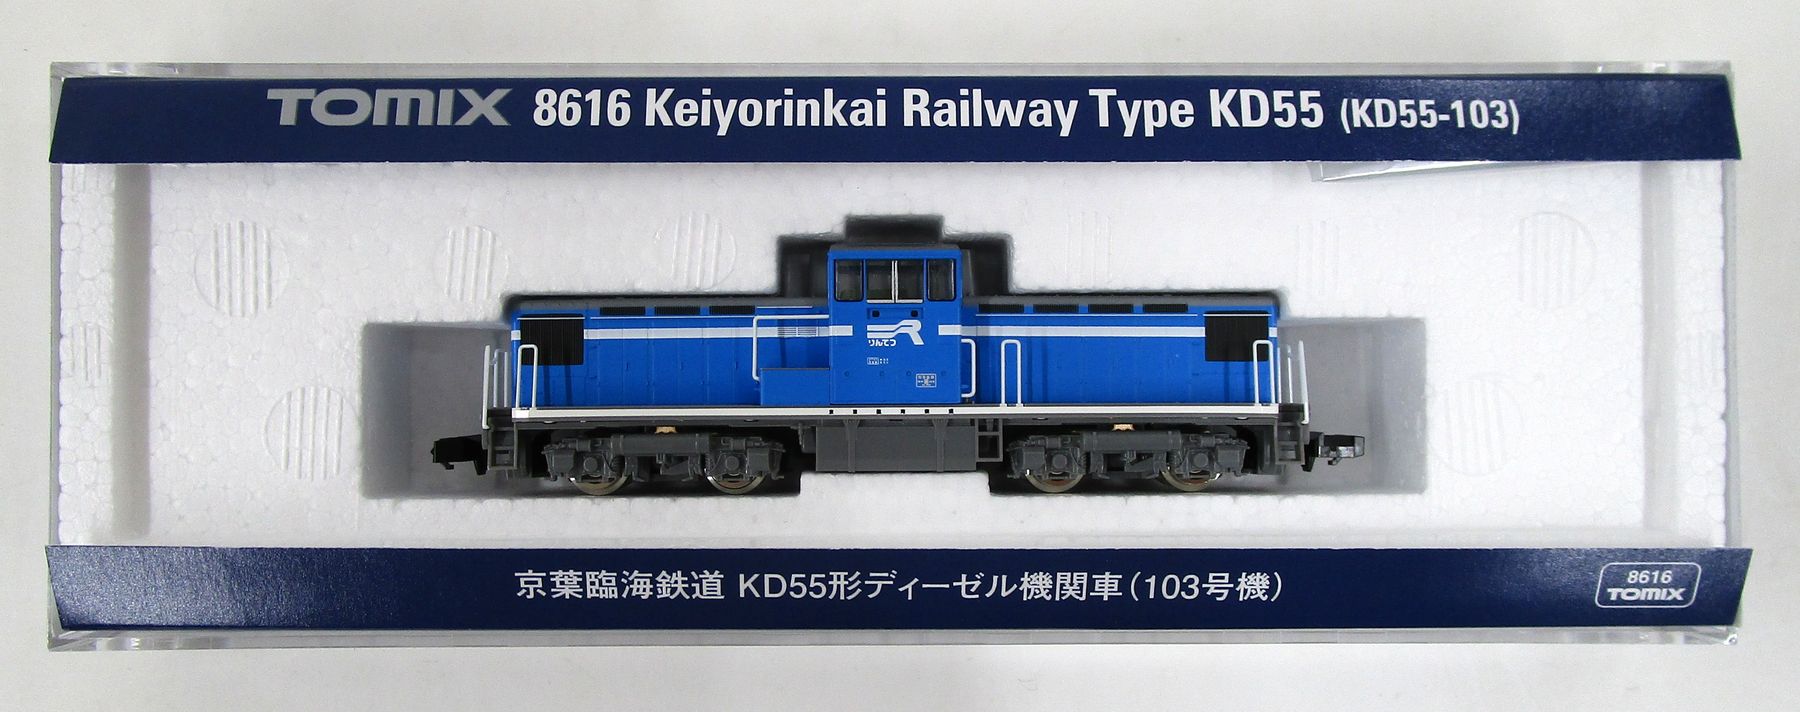 公式]鉄道模型(8616京葉臨海鉄道 KD55形ディーゼル機関車(103号機